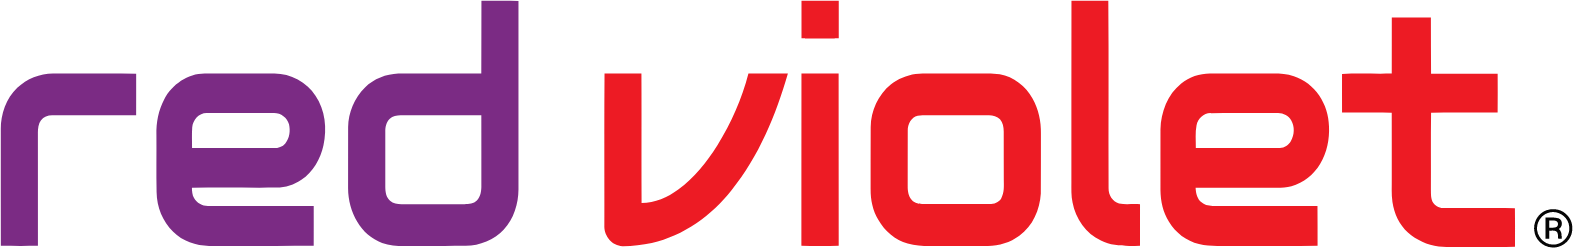 Red Violet logo large (transparent PNG)